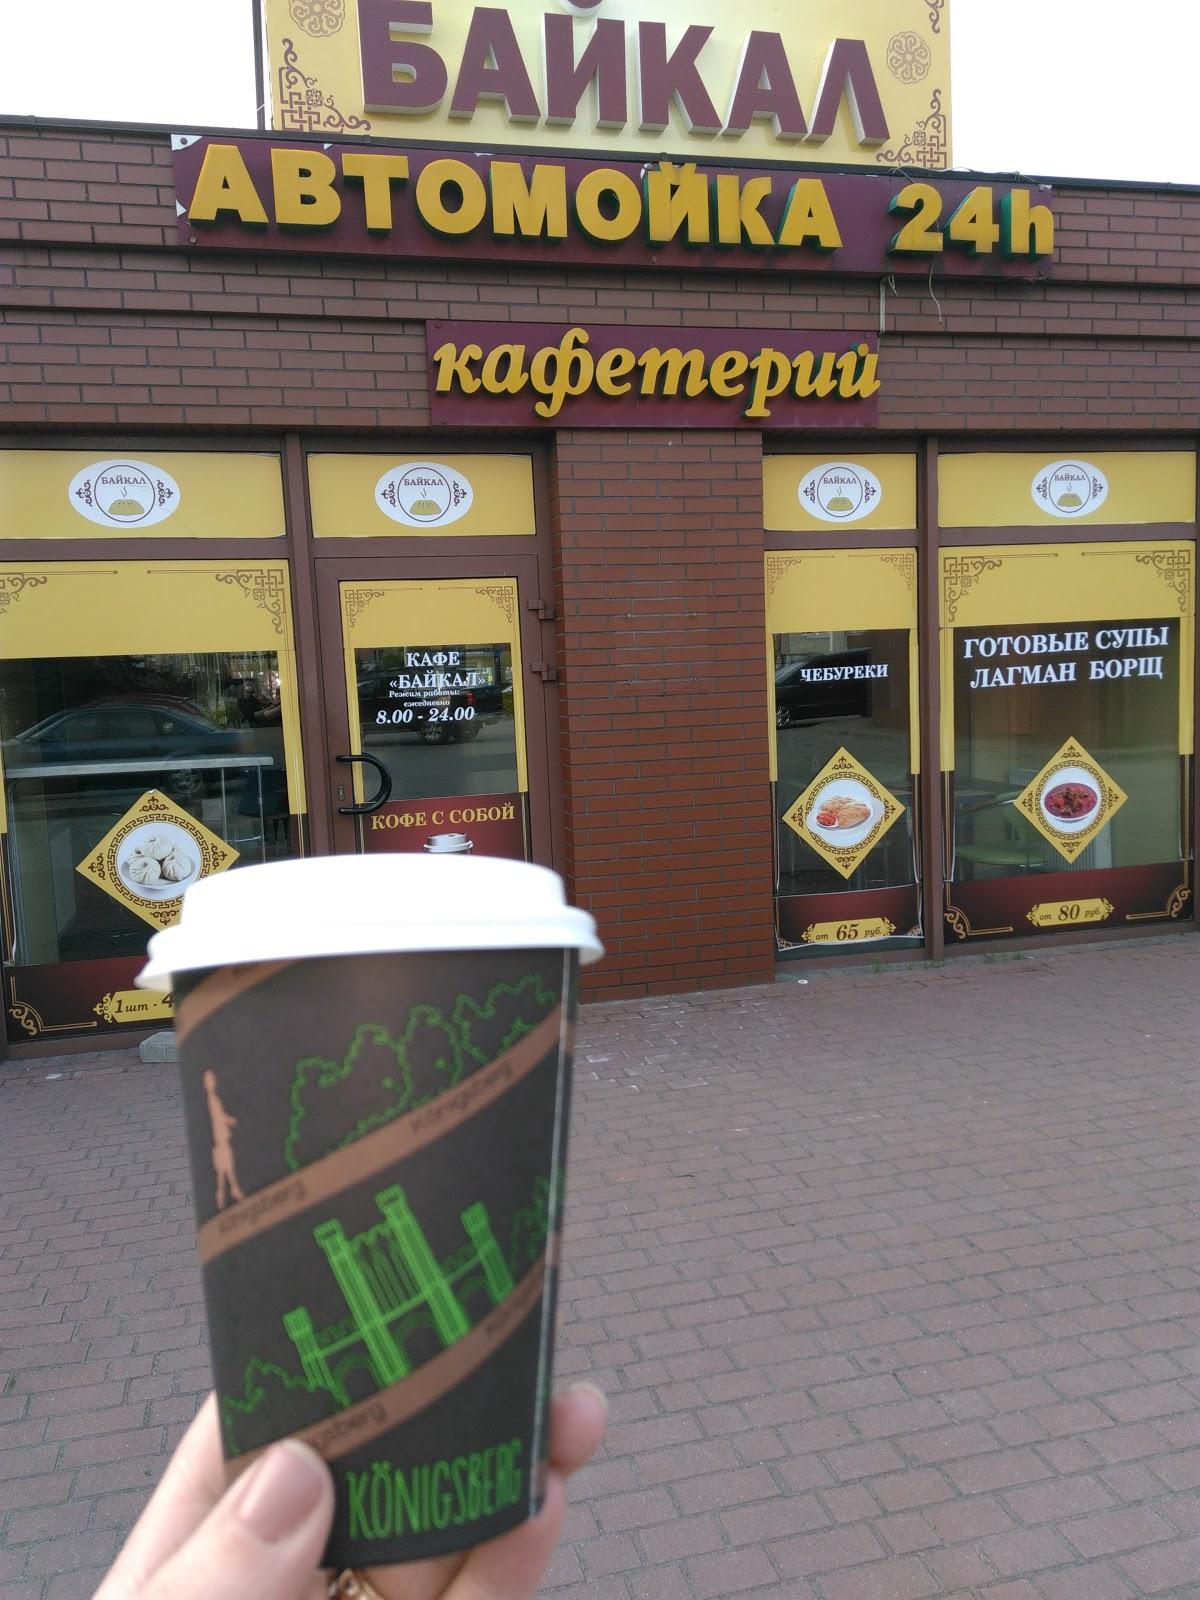 Кафе Байкал